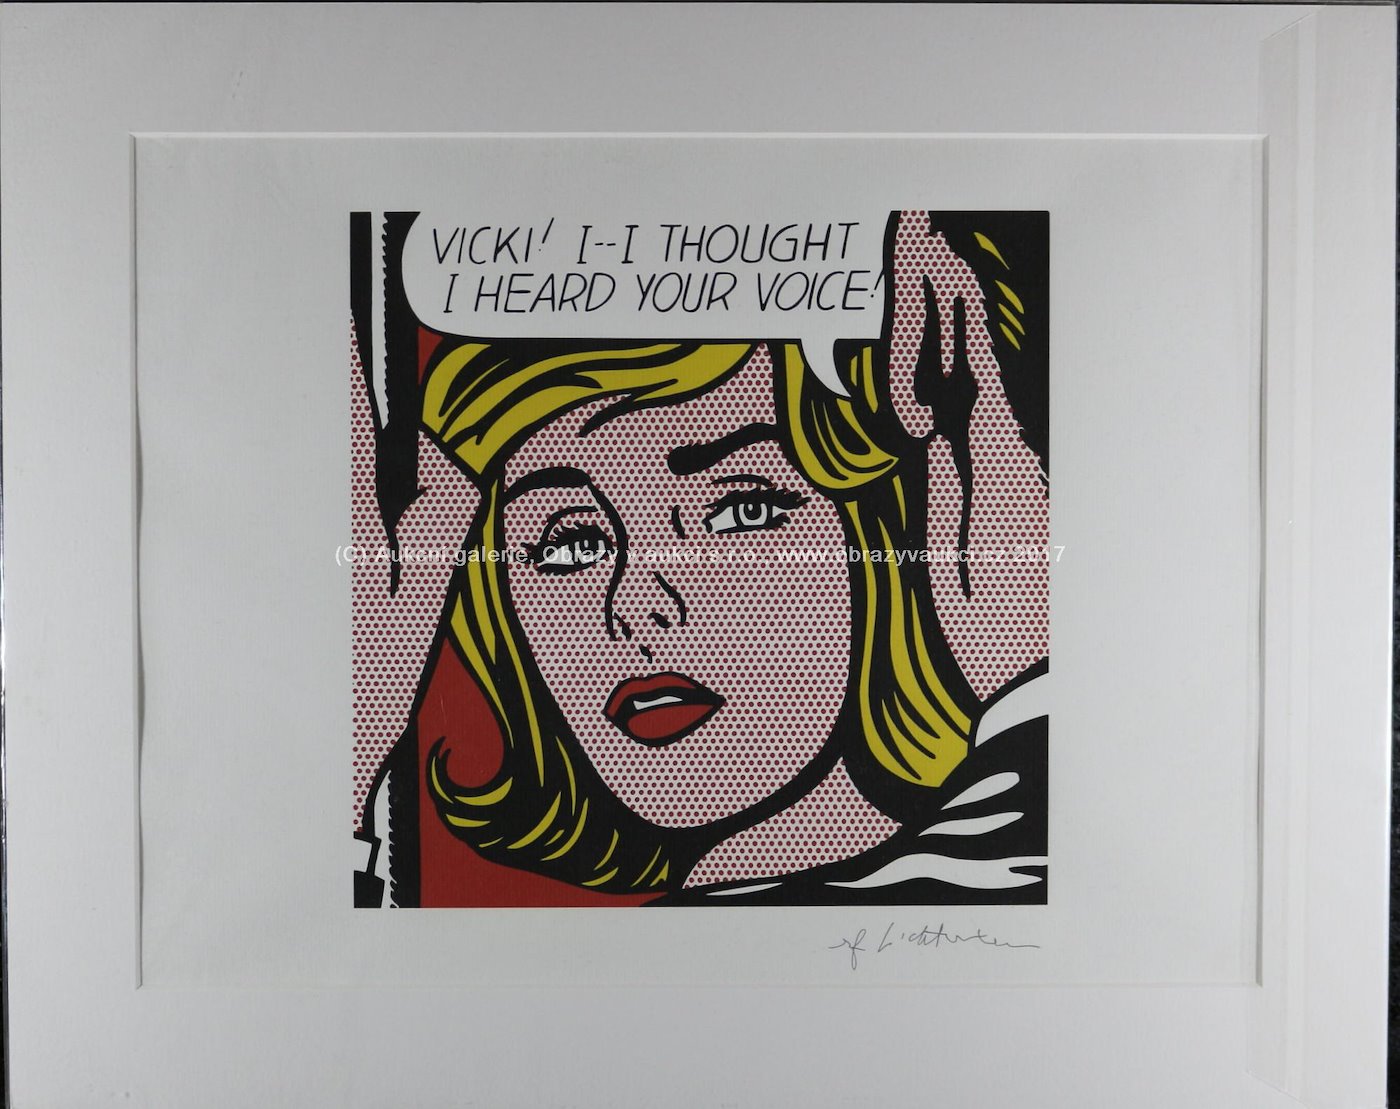 Roy Lichtenstein - Vicki! I-I thought